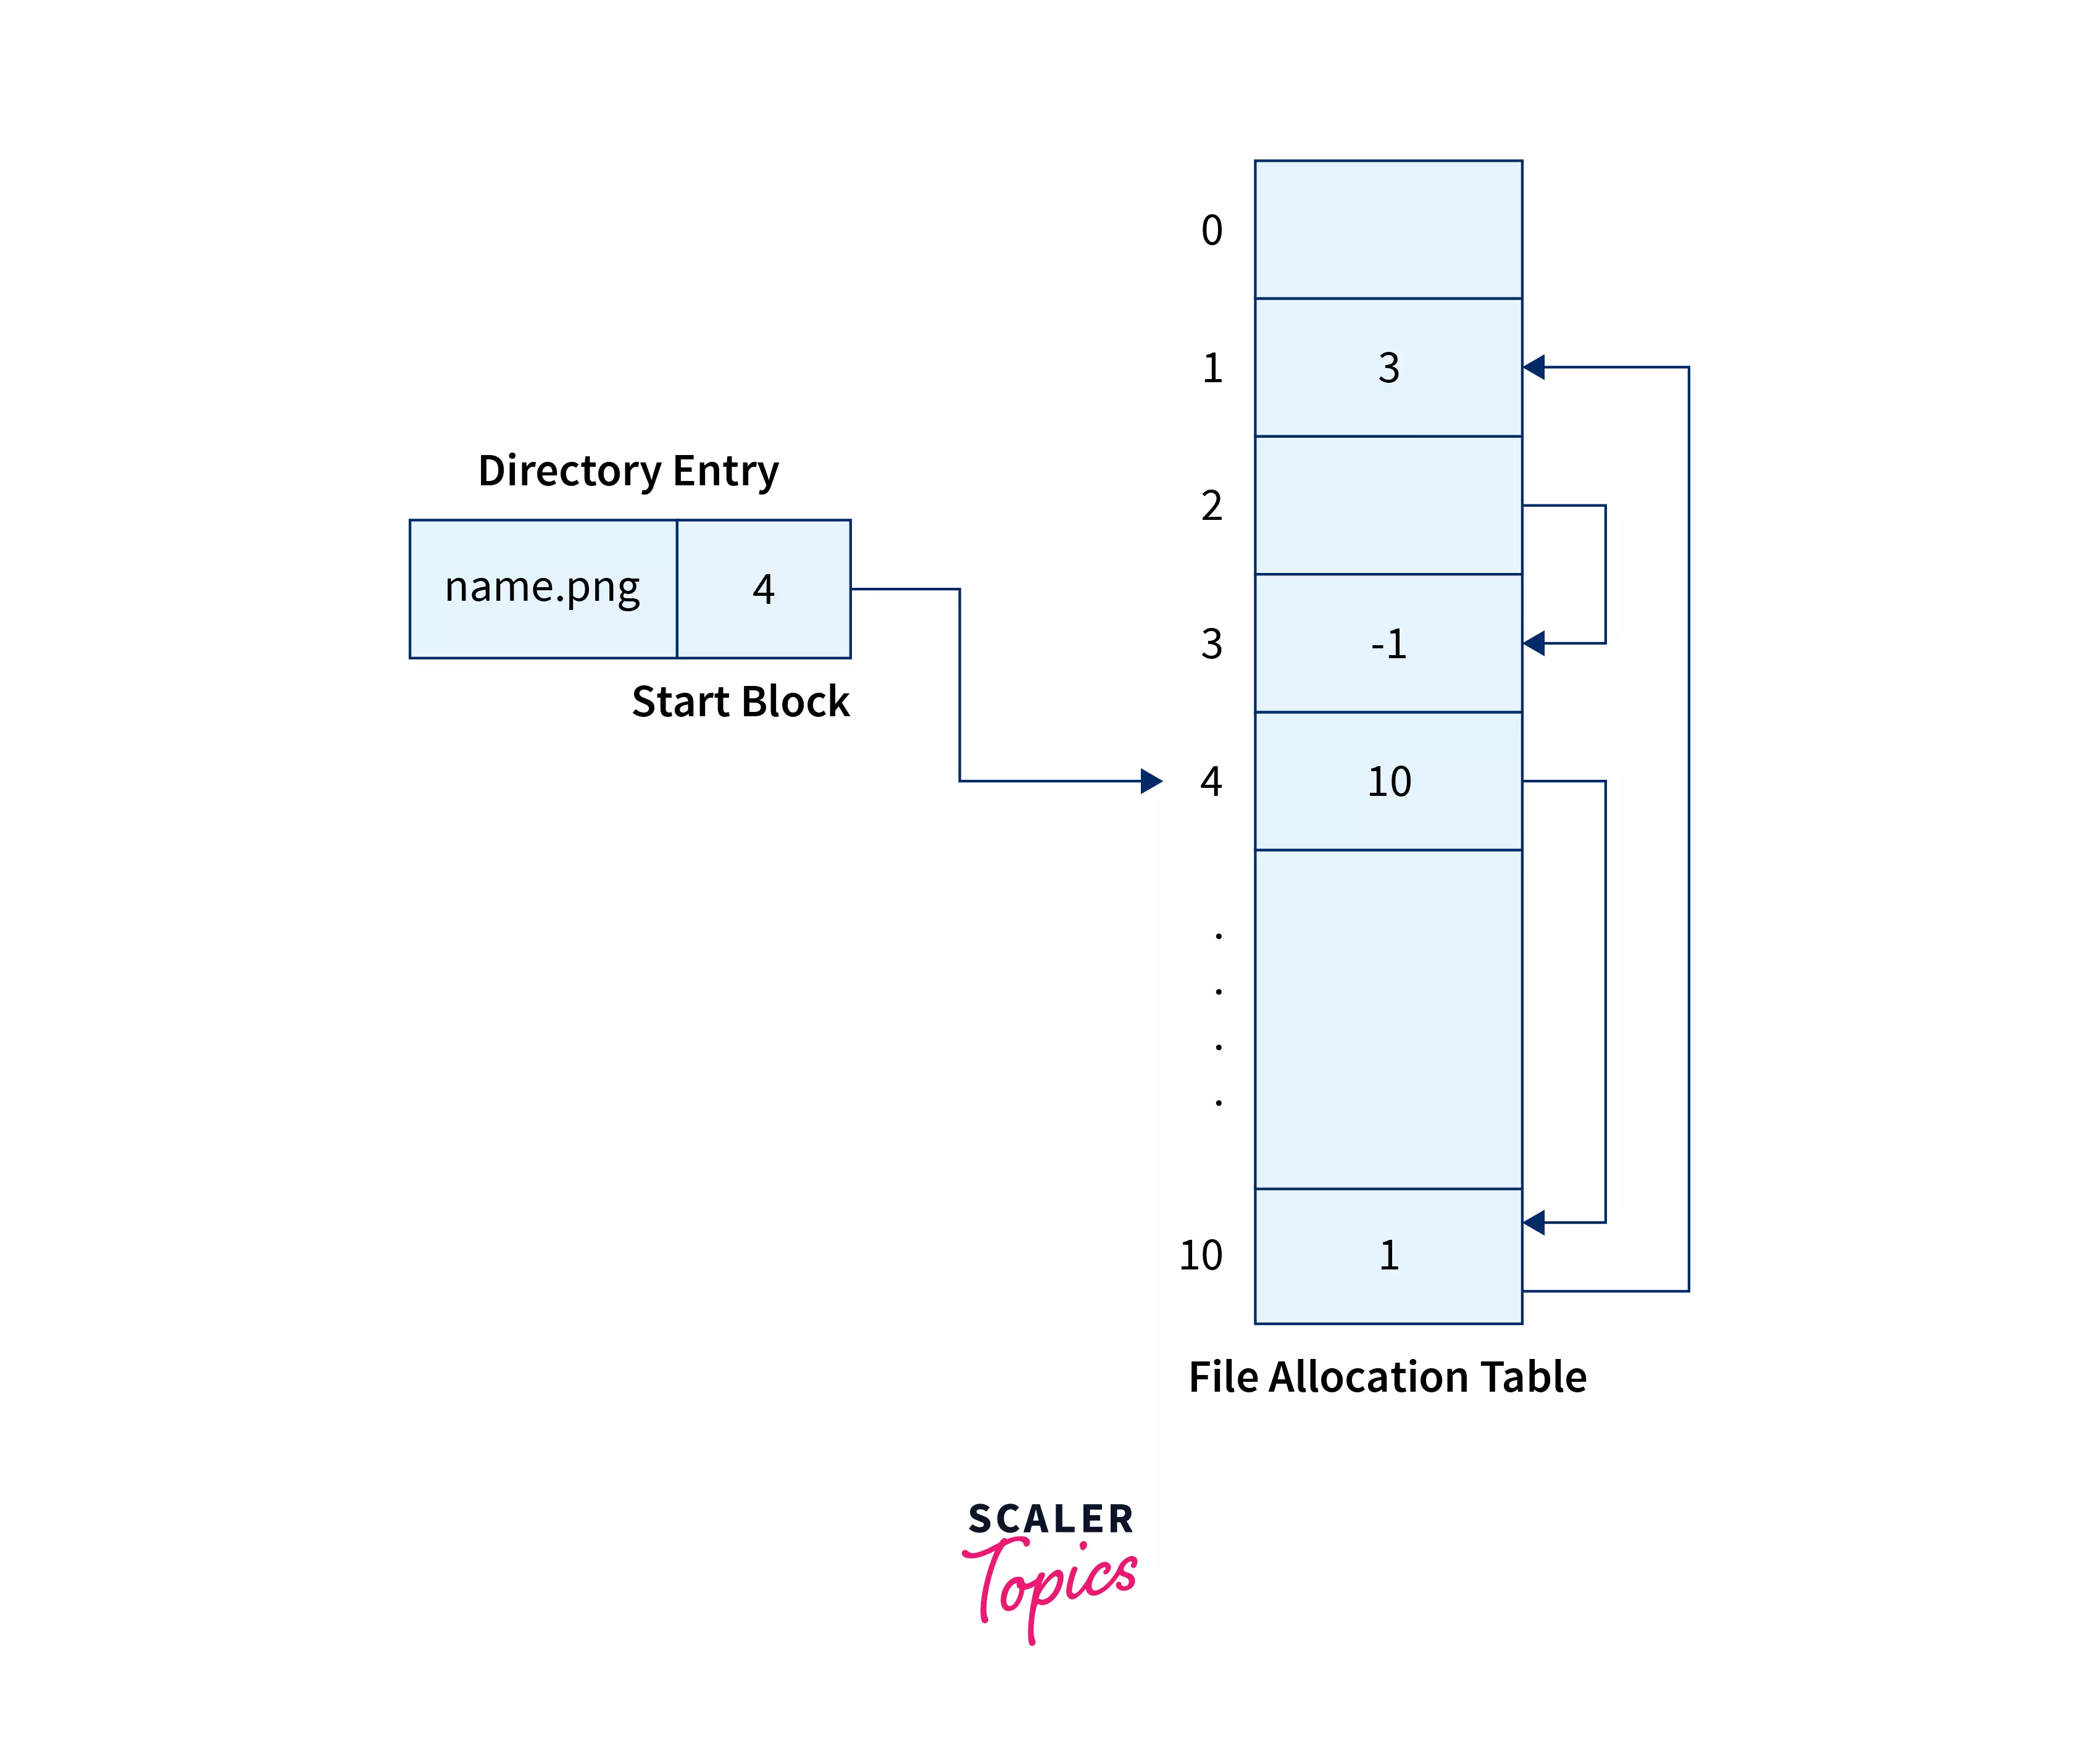 file-allocation-table